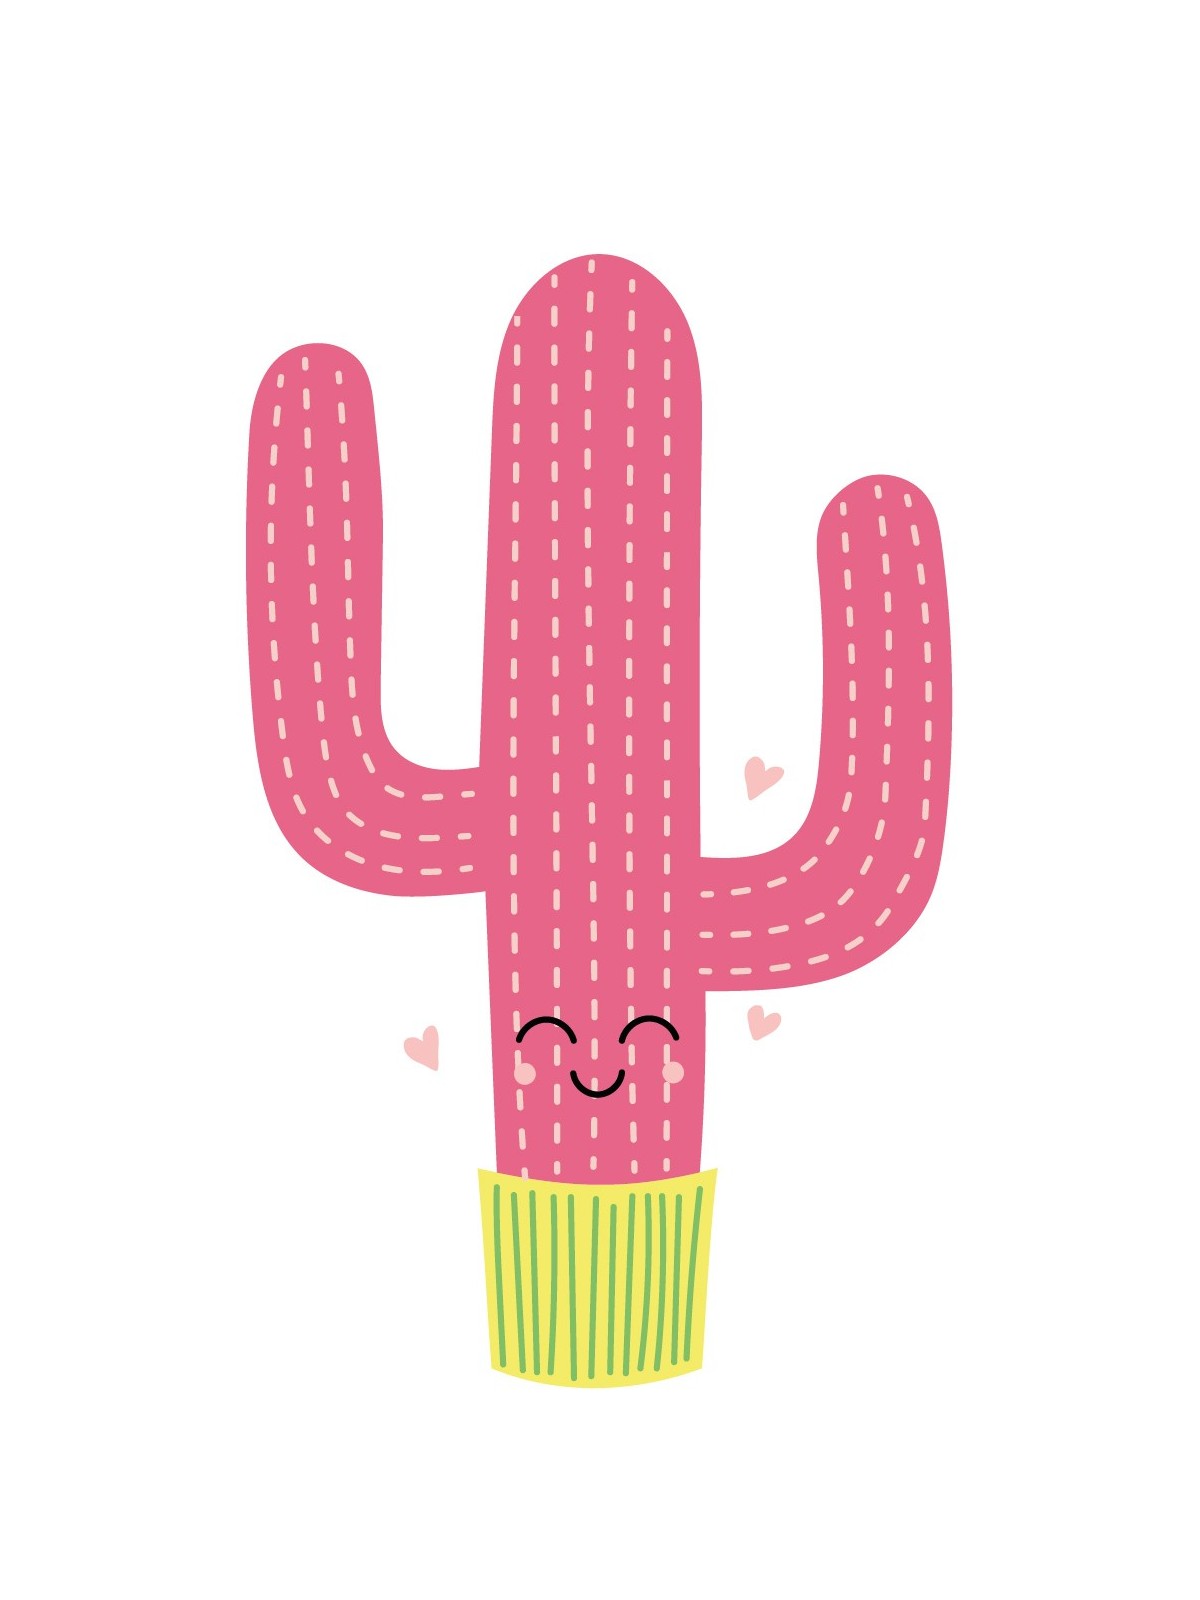 Stickers Autocollants enfant dÃ©co Cactus cÅ“ur design ref 472